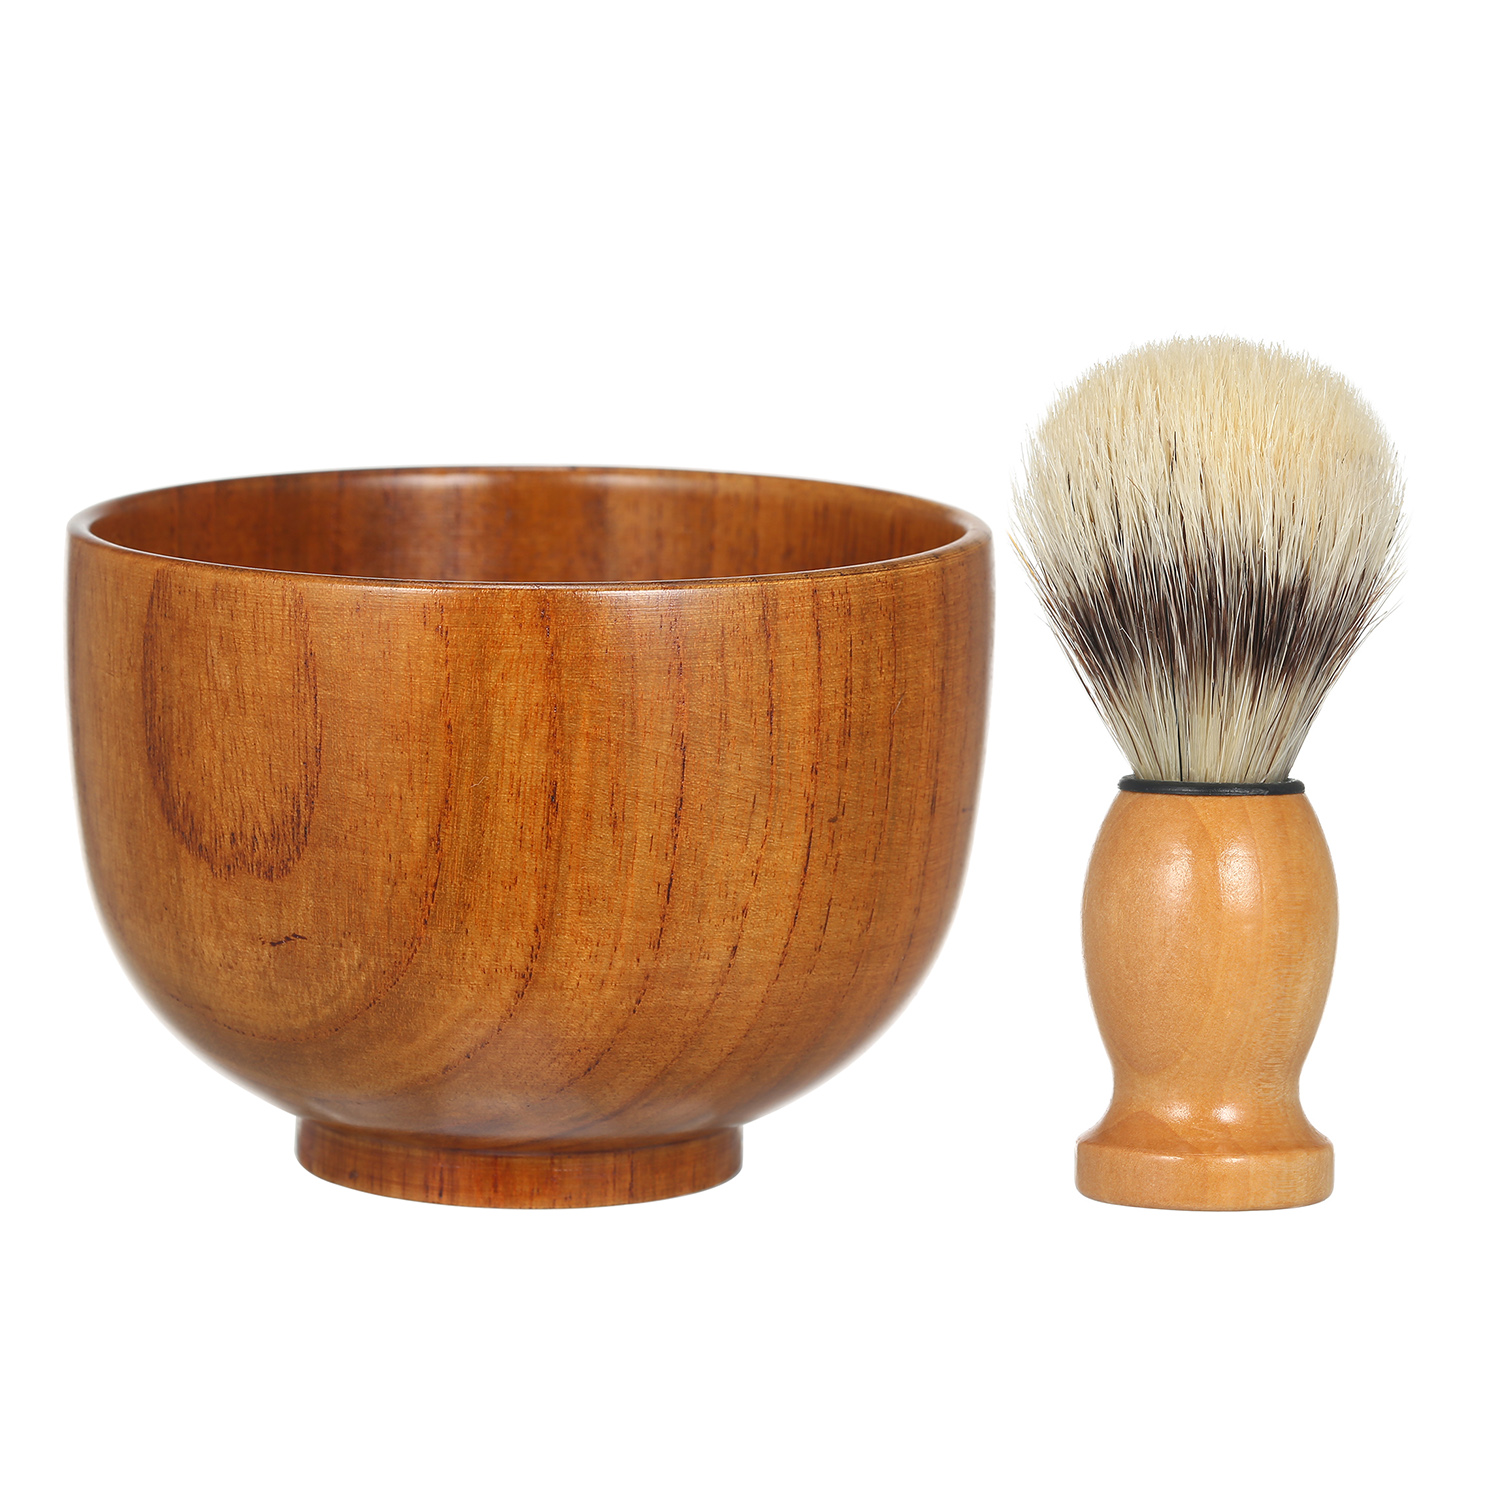 Men Wooden Shaving Bowl and Wooden Brush Beard Shaving Cream Bowl Shaving Soap Mug for Men with Shave Lather Brush Barber Tool